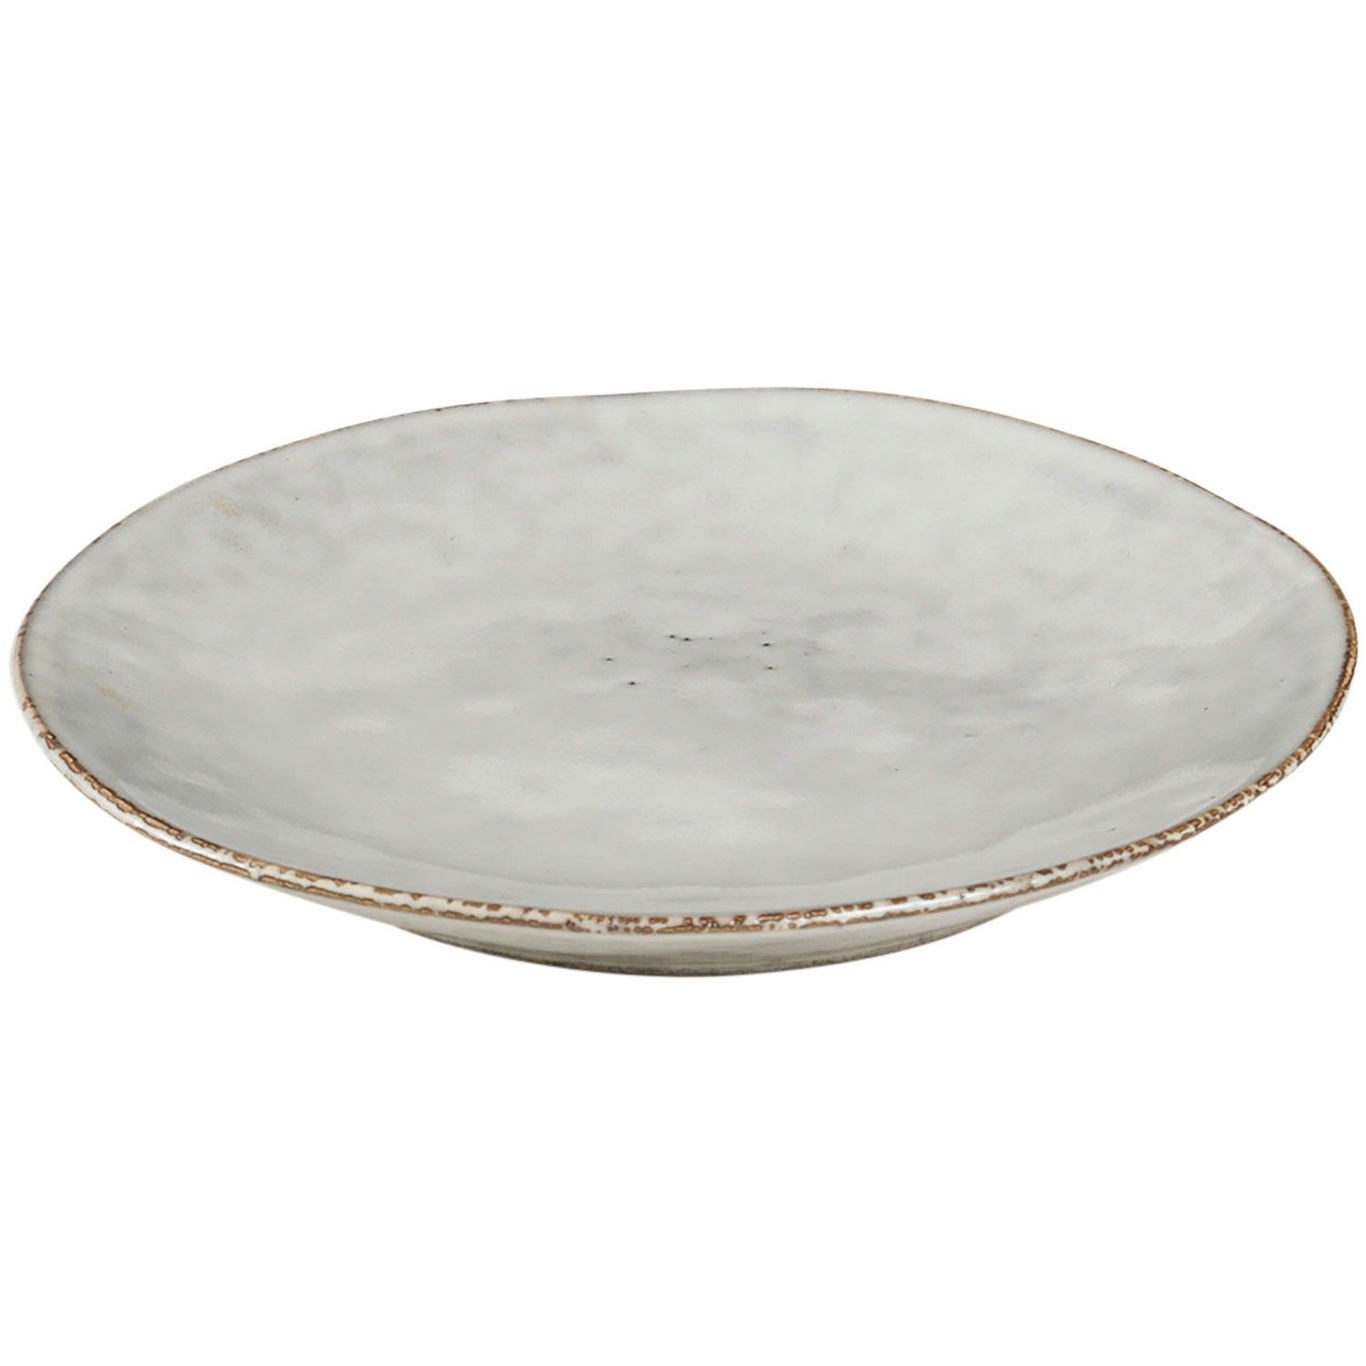 Bekend Zaklampen heelal Nordic Sand Plate 15 cm, Sand - Broste Copenhagen @ RoyalDesign